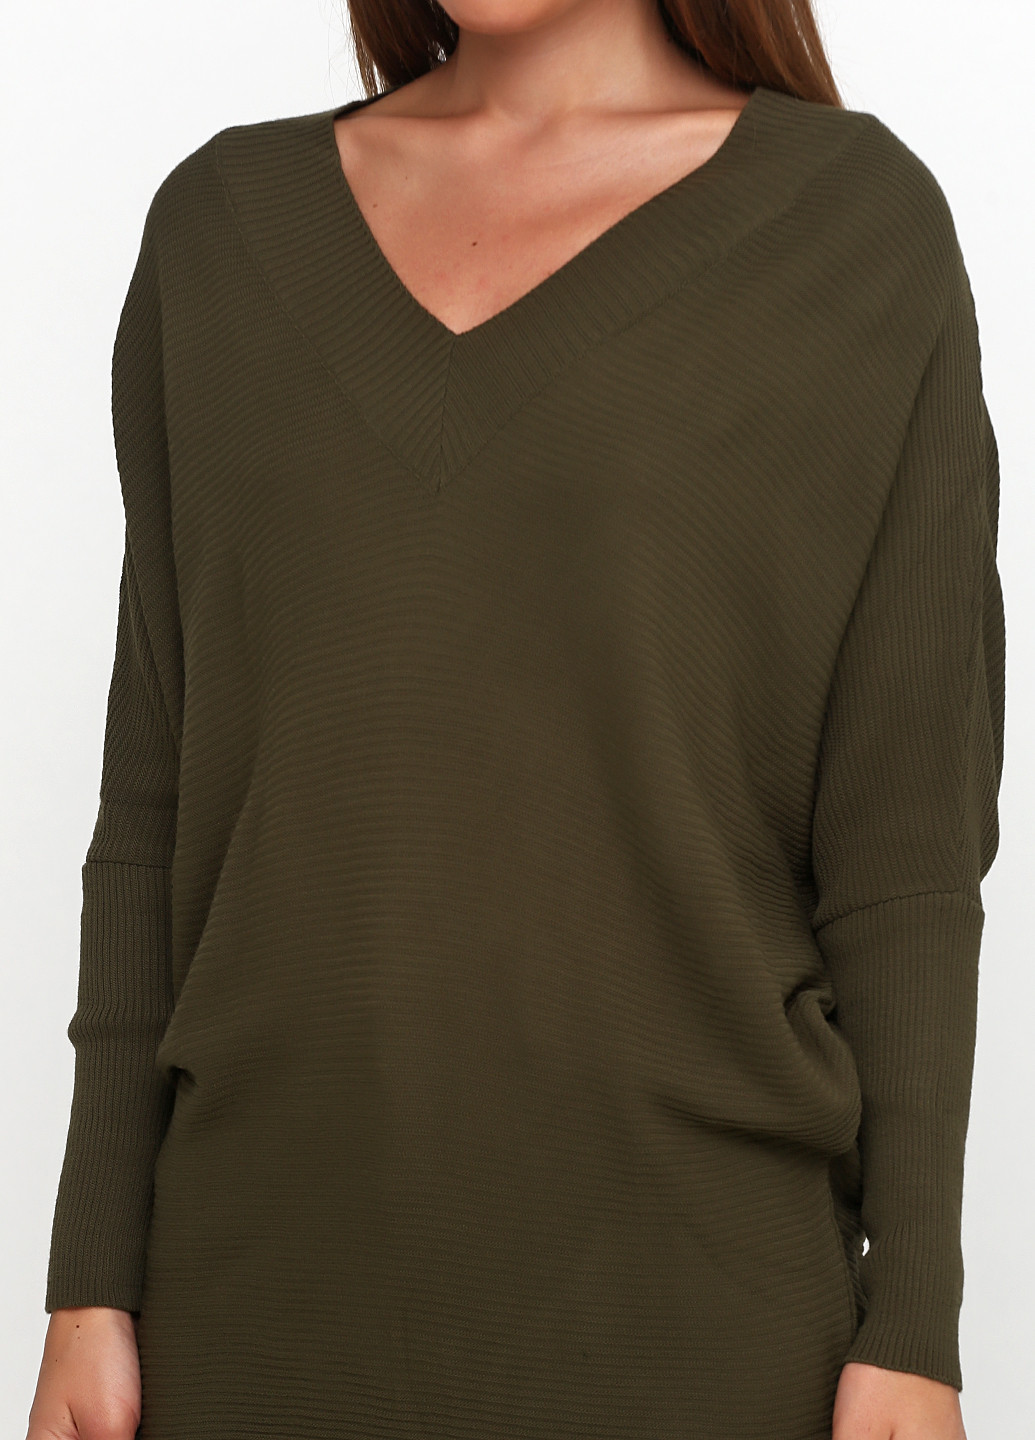 Оливковый (хаки) демисезонный пуловер пуловер Soyler